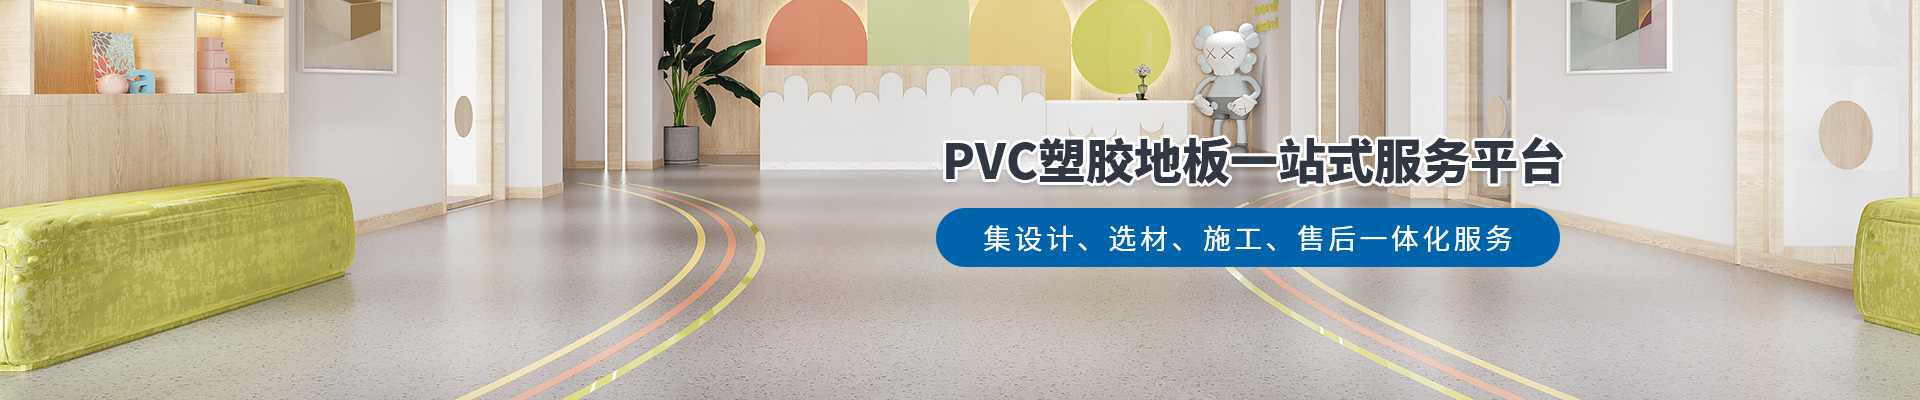 鳳城橡塑，PVC塑膠地板一站式服務平臺